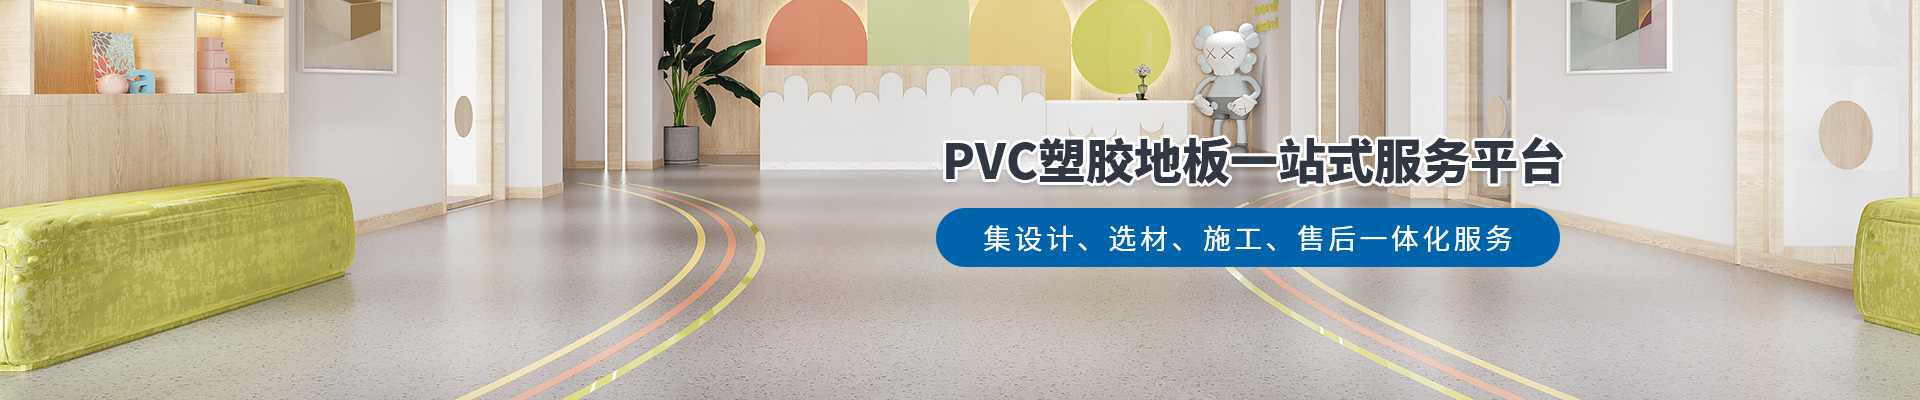 鳳城橡塑，PVC塑膠地板一站式服務平臺